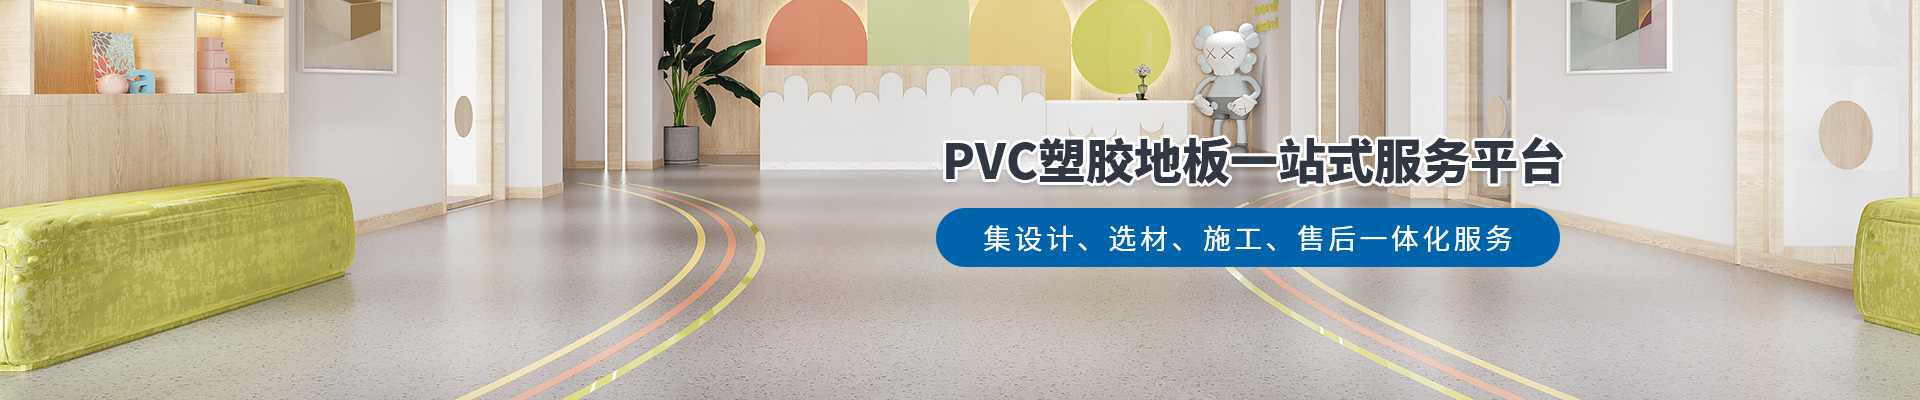 鳳城橡塑，PVC塑膠地板一站式服務平臺